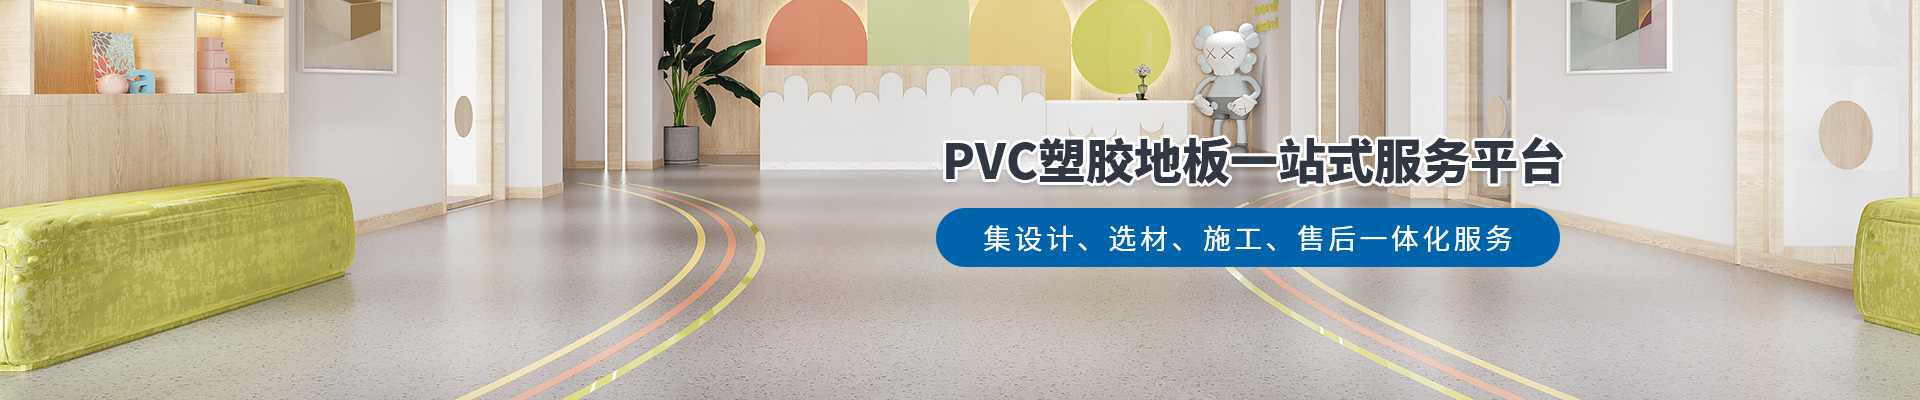 鳳城橡塑，PVC塑膠地板一站式服務平臺